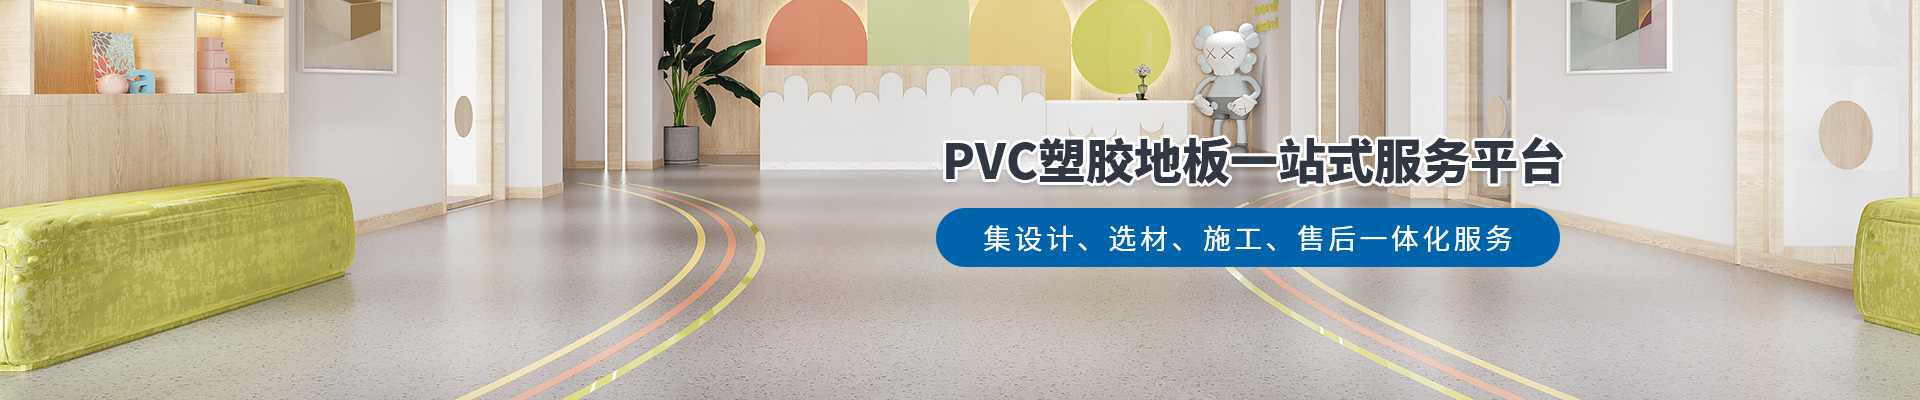 鳳城橡塑，PVC塑膠地板一站式服務平臺